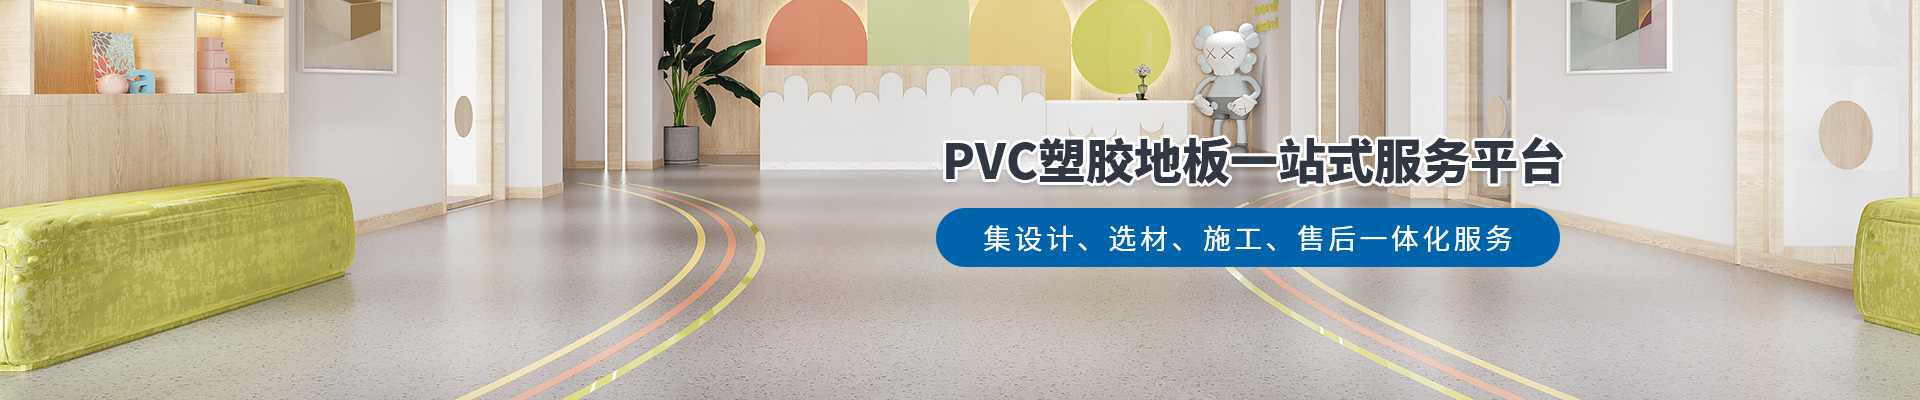 鳳城橡塑，PVC塑膠地板一站式服務平臺